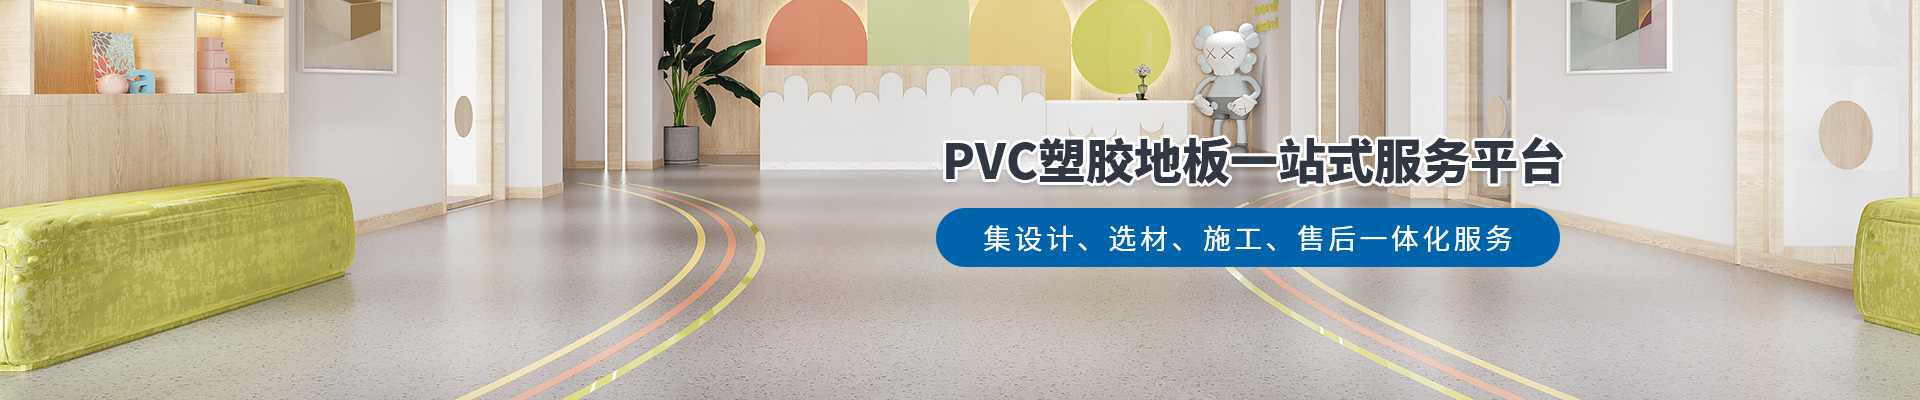 鳳城橡塑，PVC塑膠地板一站式服務平臺